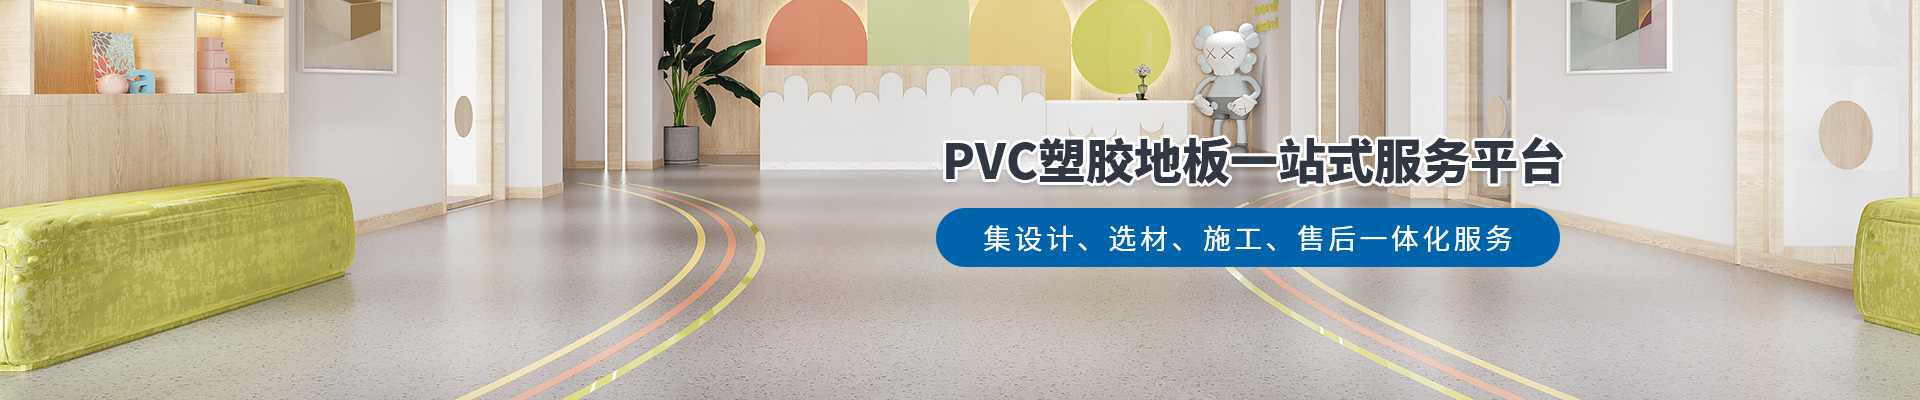 鳳城橡塑，PVC塑膠地板一站式服務平臺